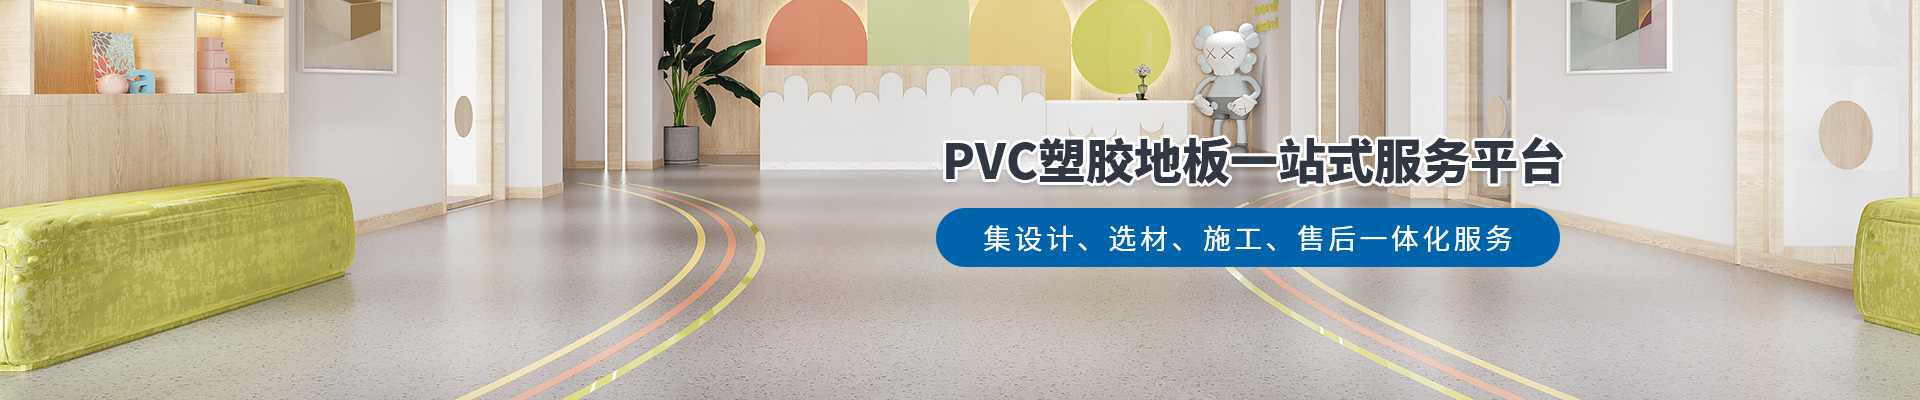 鳳城橡塑，PVC塑膠地板一站式服務平臺